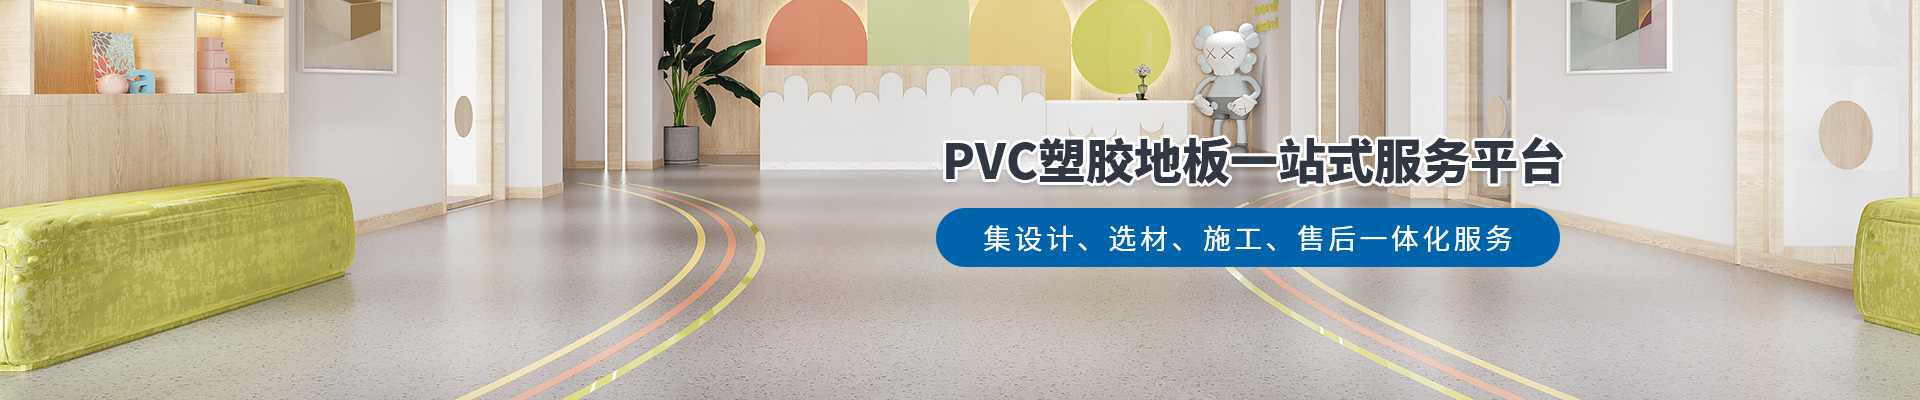 鳳城橡塑，PVC塑膠地板一站式服務平臺